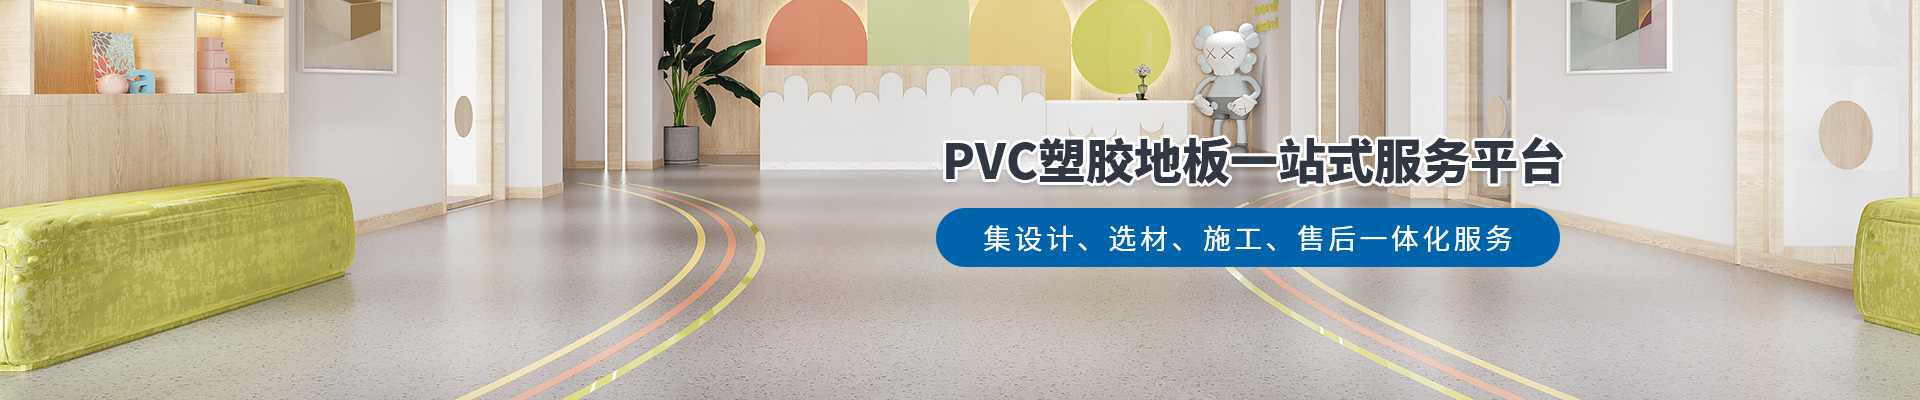 鳳城橡塑，PVC塑膠地板一站式服務平臺